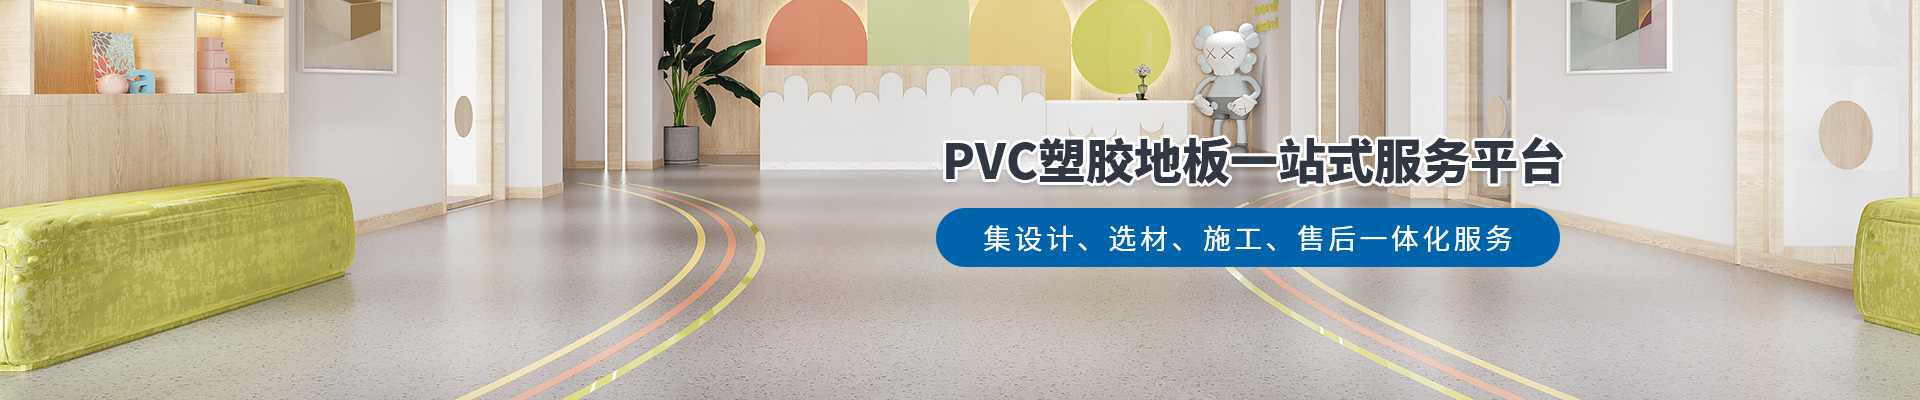 鳳城橡塑，PVC塑膠地板一站式服務平臺